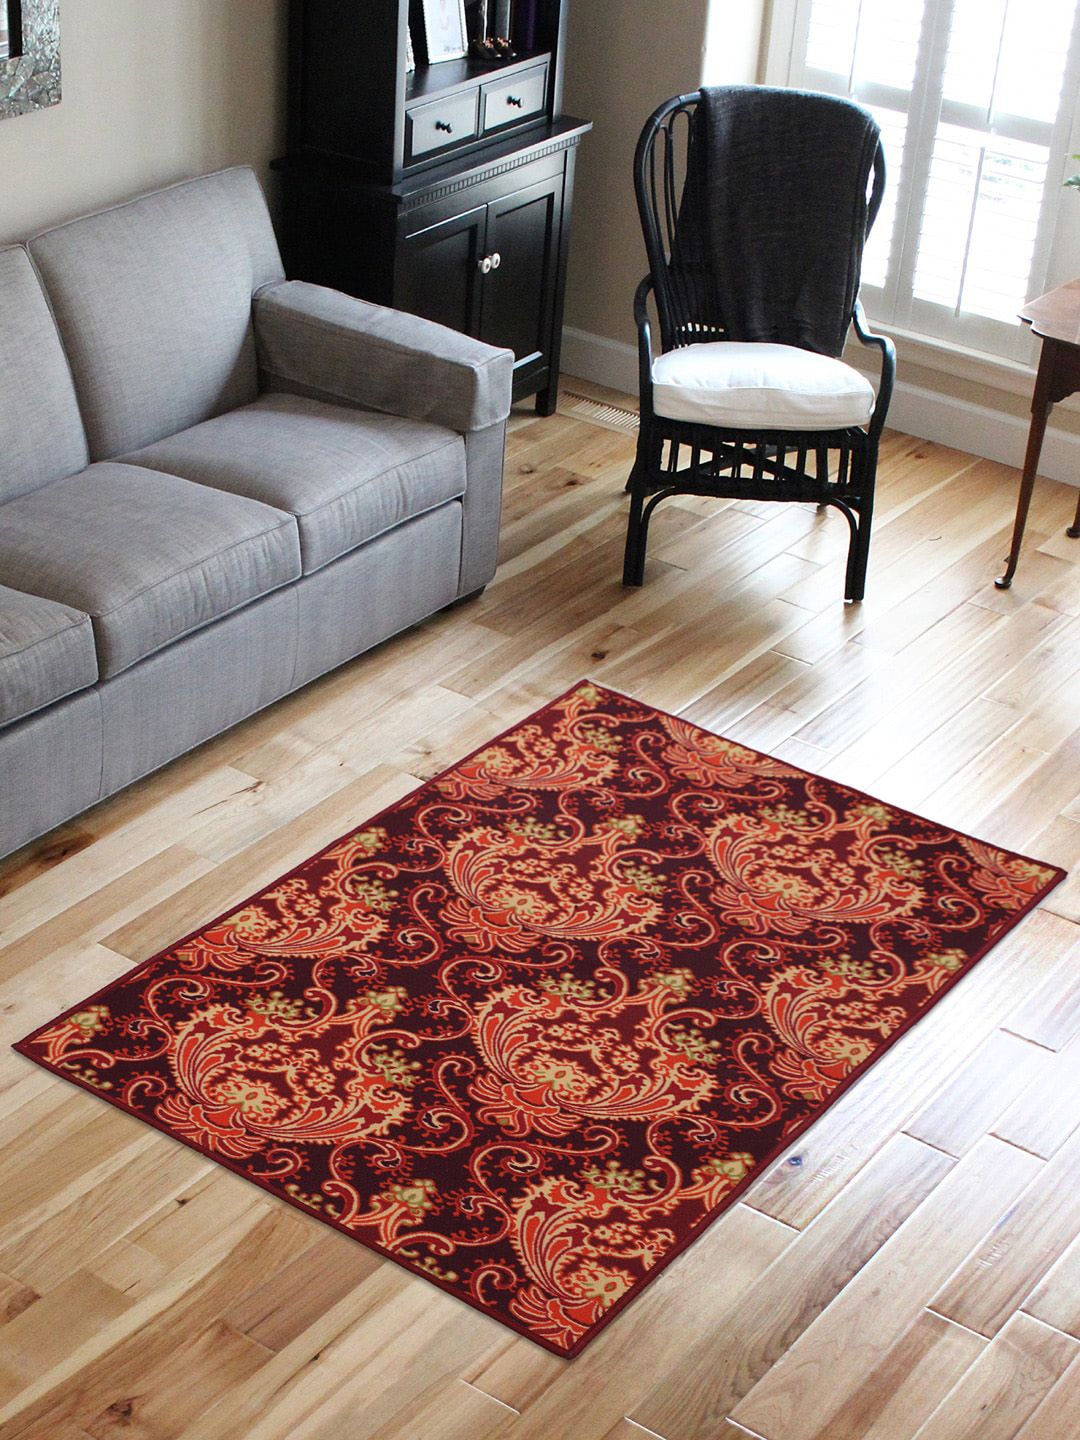 RUGSMITH Multicoloured Printed Premium Quality Anti-Skid Carpet Price in India